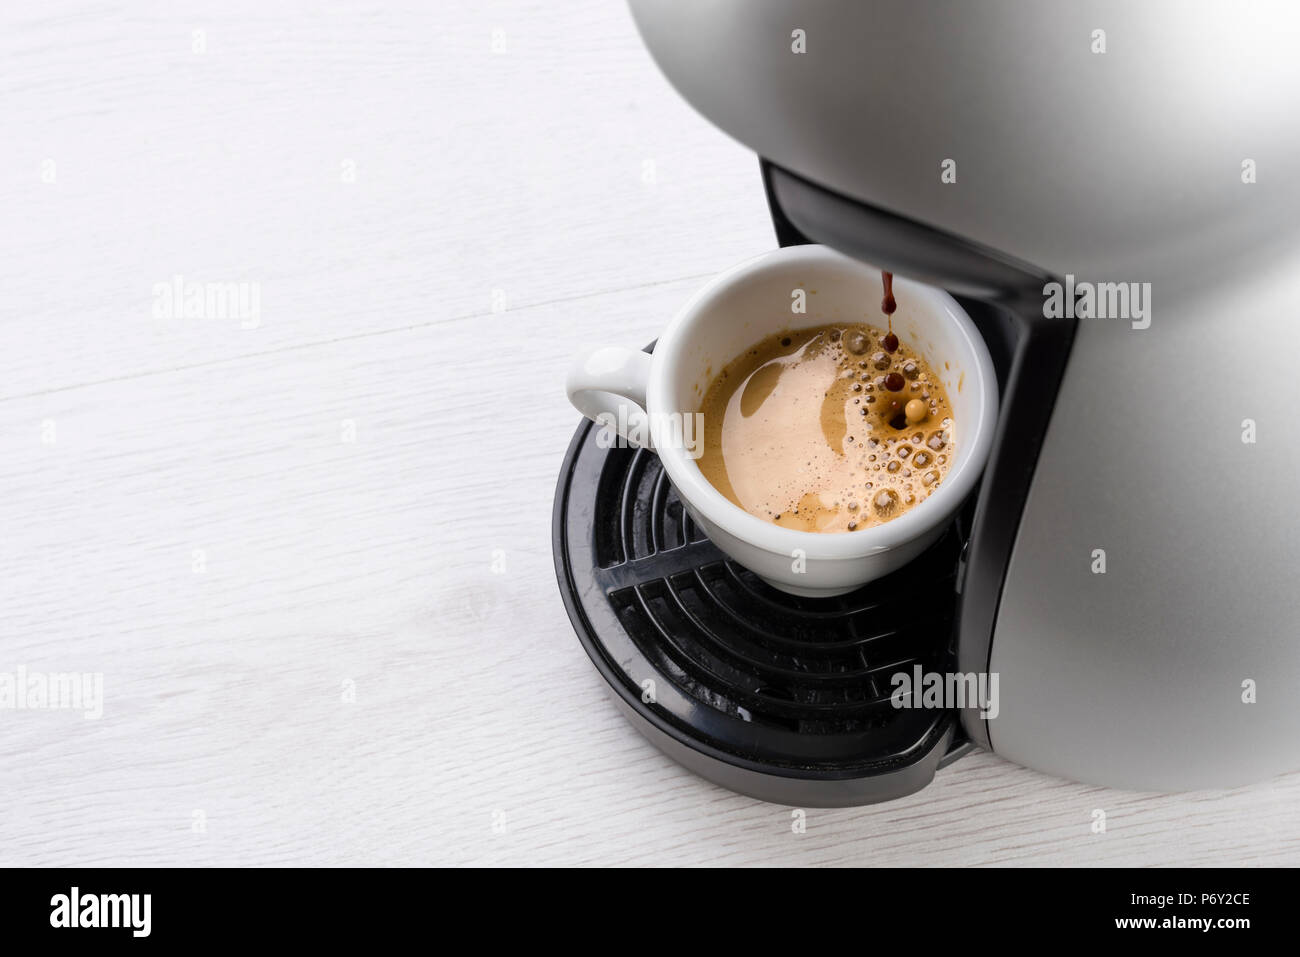 La imagen muestra una taza de café caliente servida en la mesa